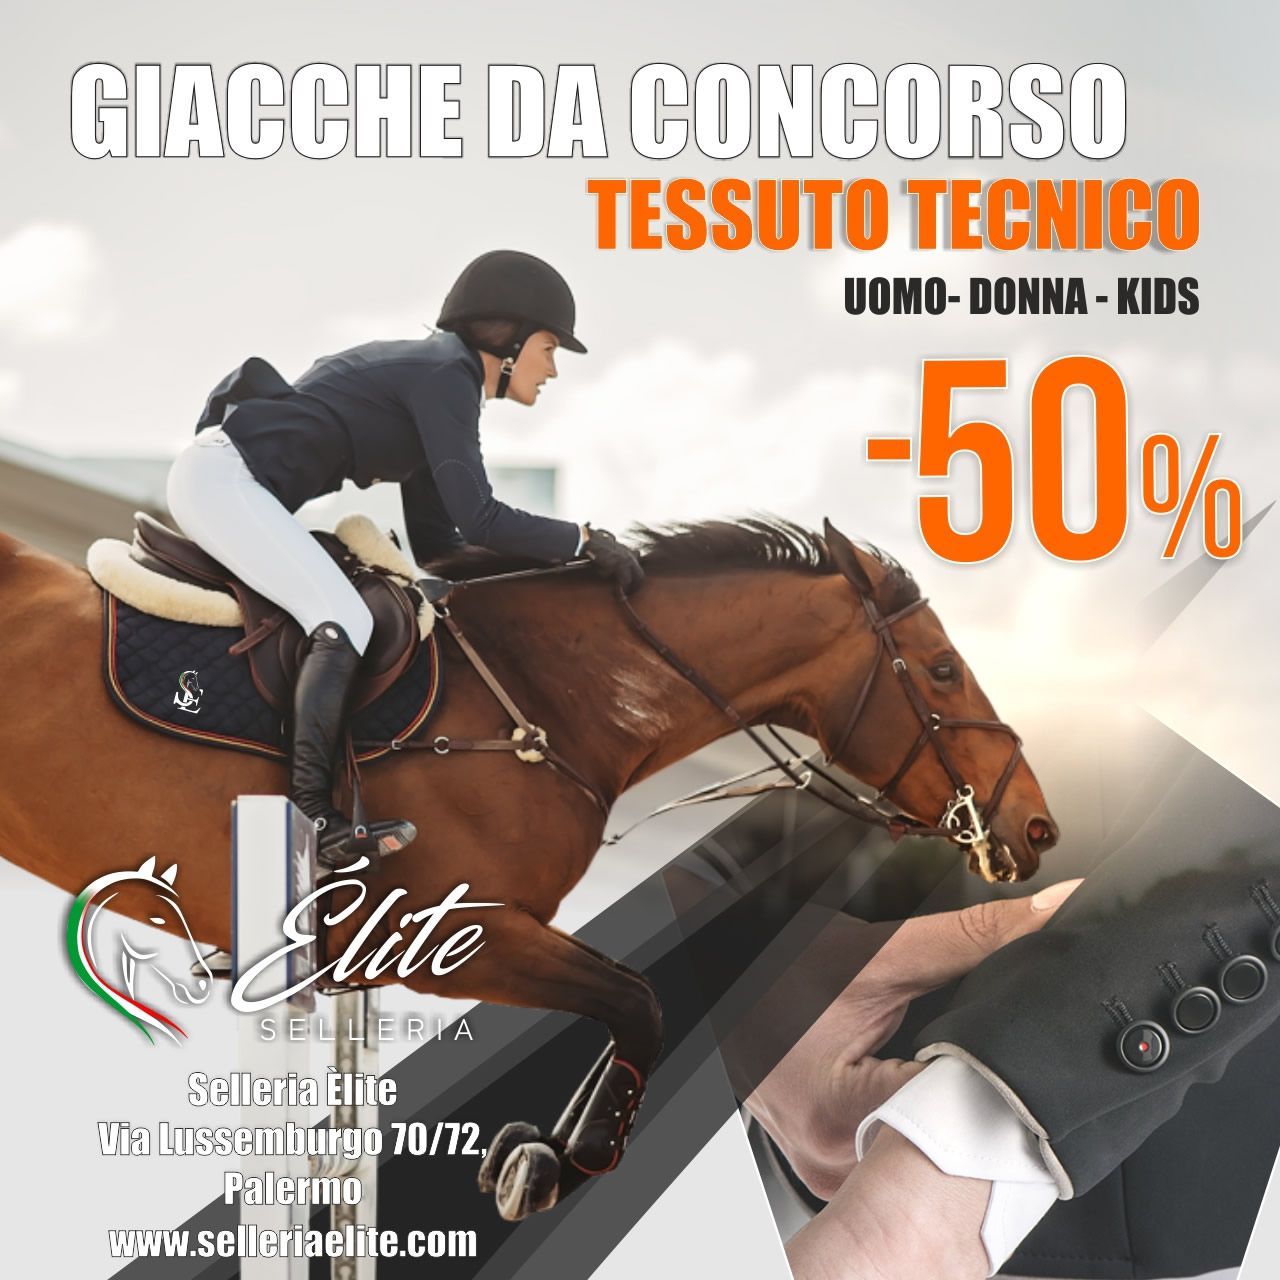 Anno nuovo giacca equestre nuova. Terminata!, selleria online Élite del cavallo, Palermo